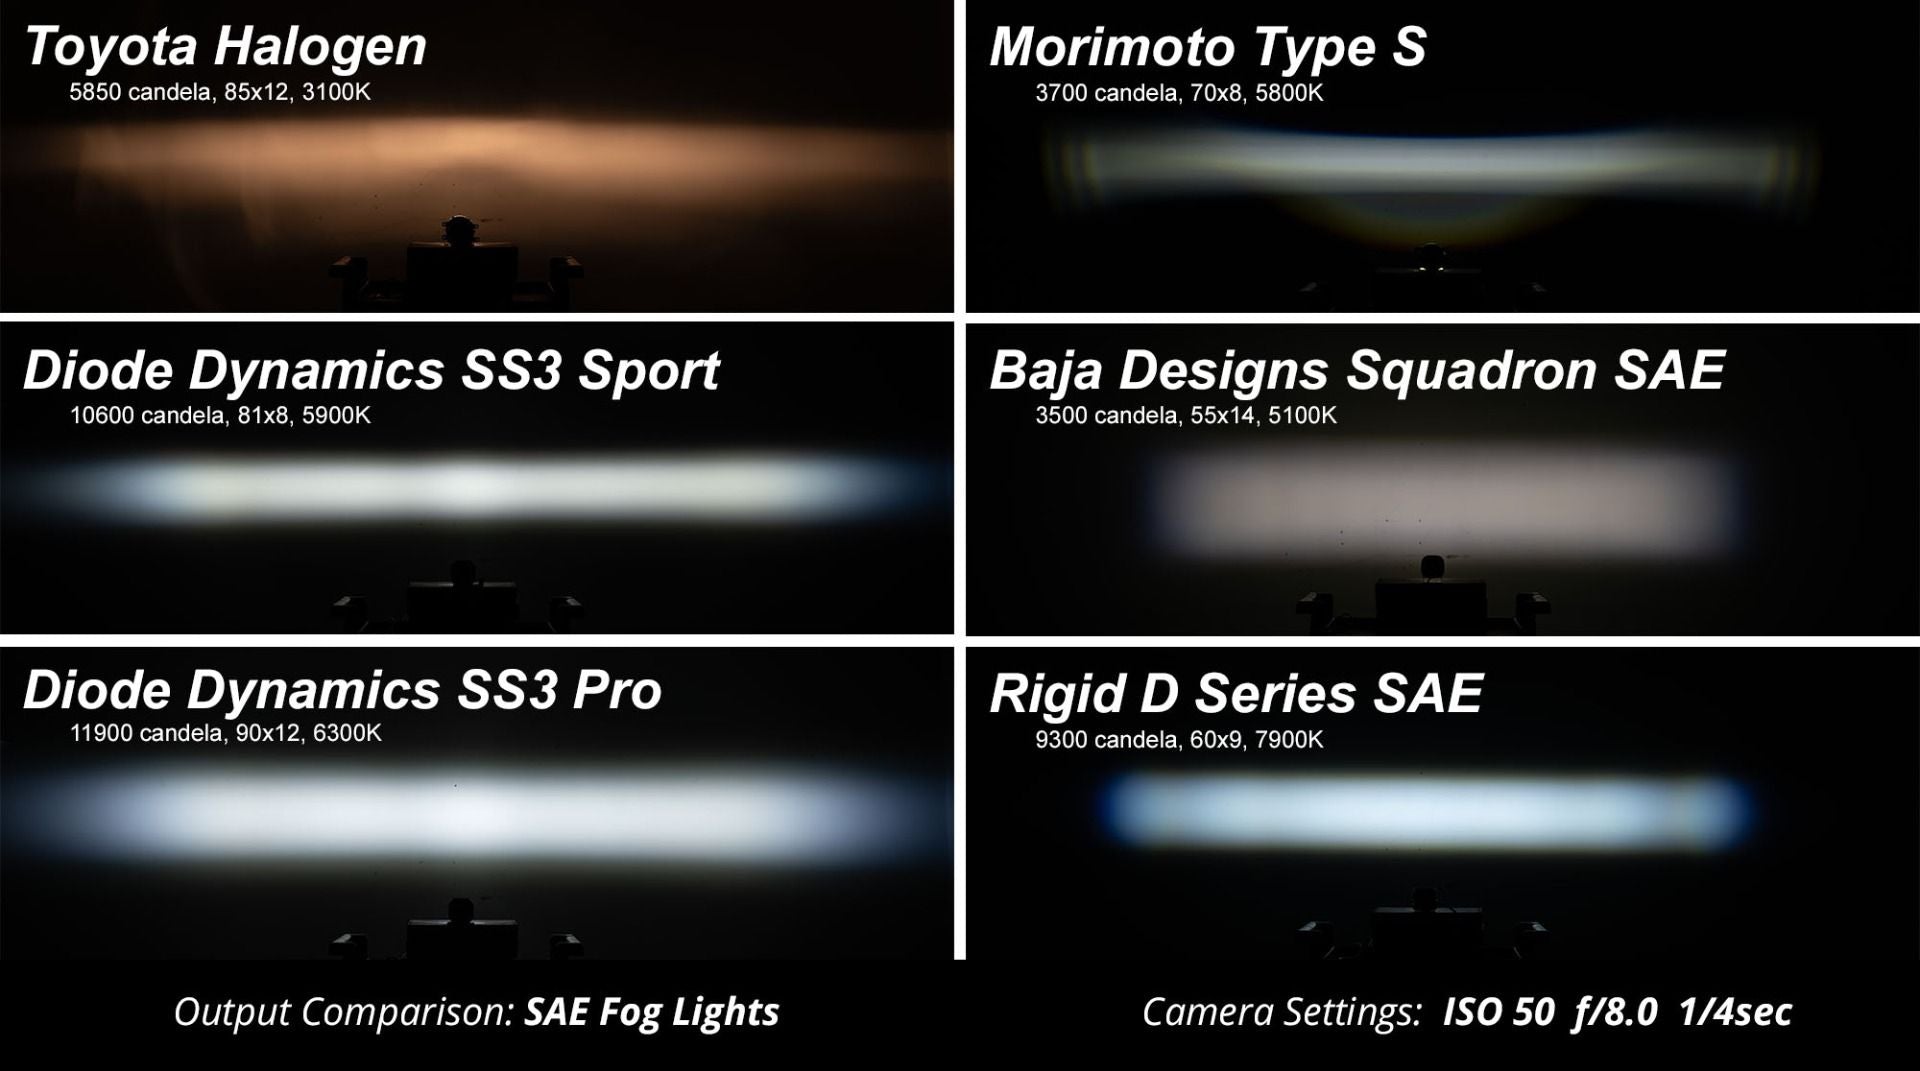 SS3 LED Fog Light Kit for 2013-2018 Acura ILX